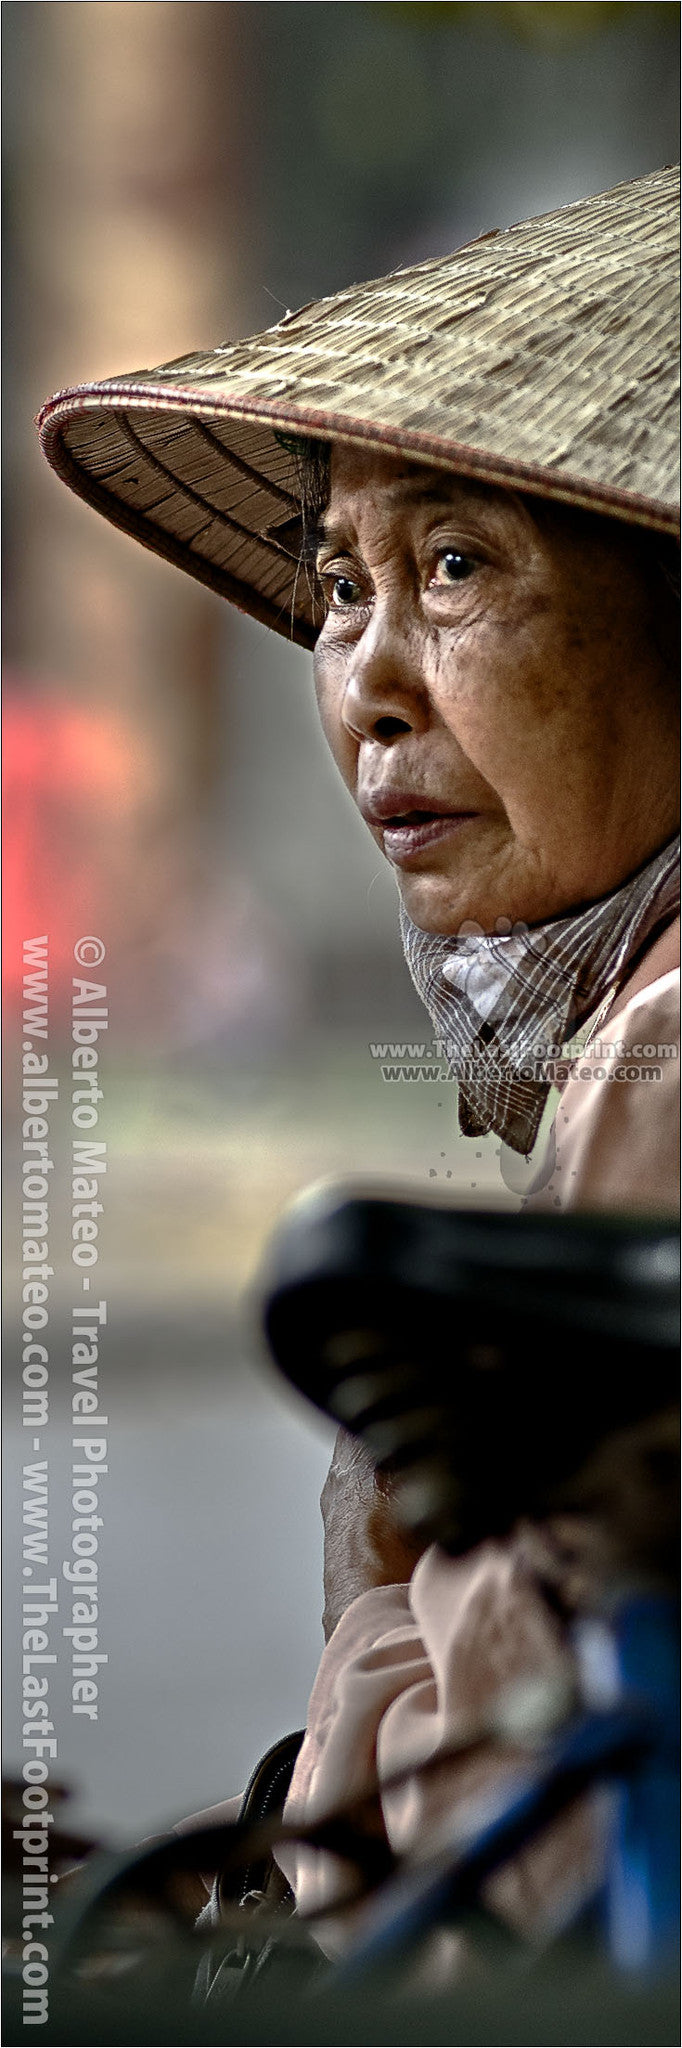 Portrait of a Vietnamese woman, Hanoi old quarters, Vietnam.